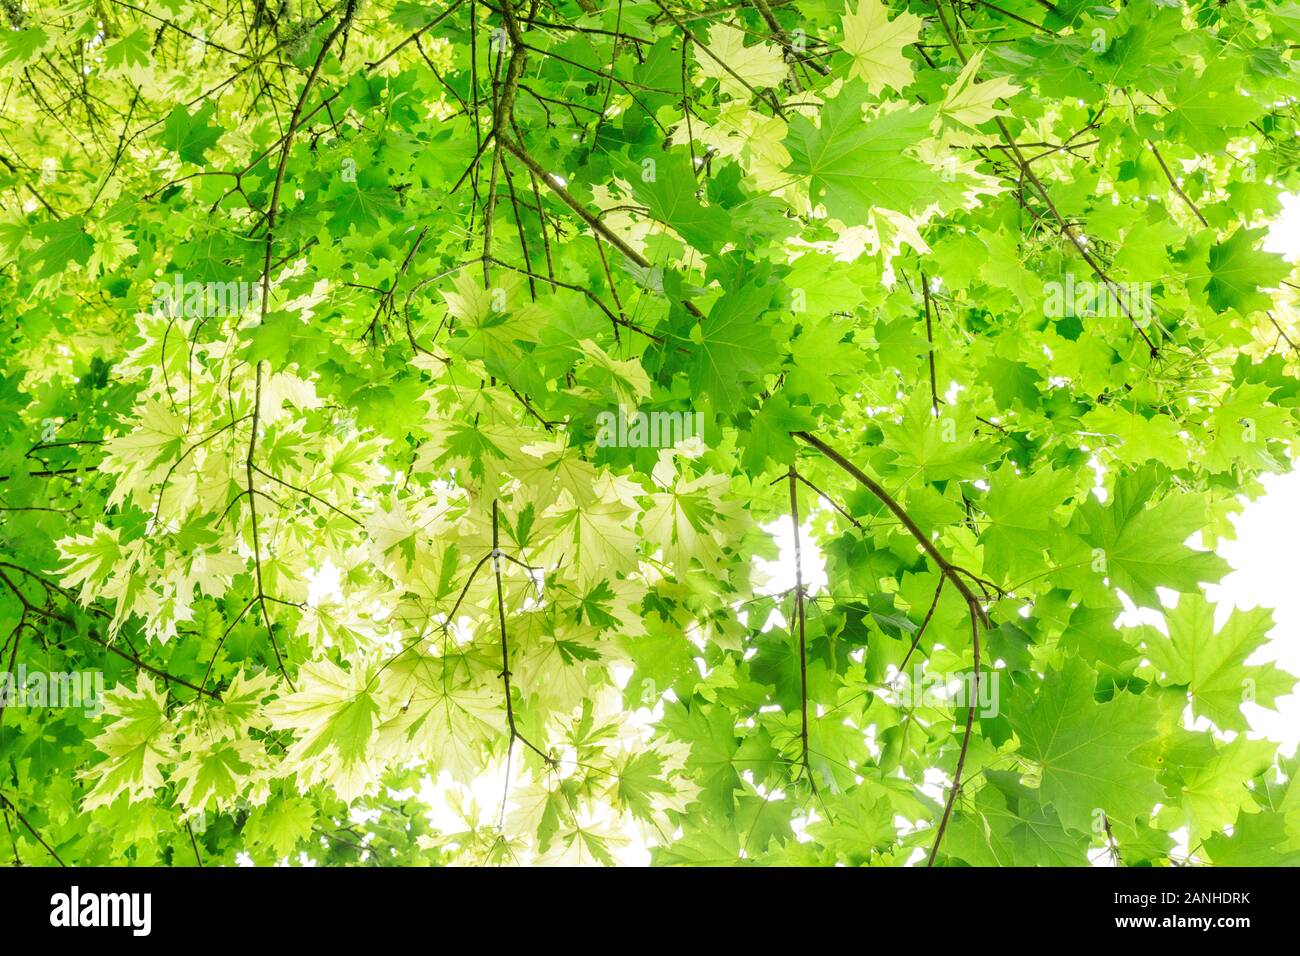 Érable de Norvège 'Drummondii', Acer platanoides 'Drummondii', mixte de feuilles normales du porte-greffe et feuilles panachées, France, Loiret, Orleans, ou Banque D'Images